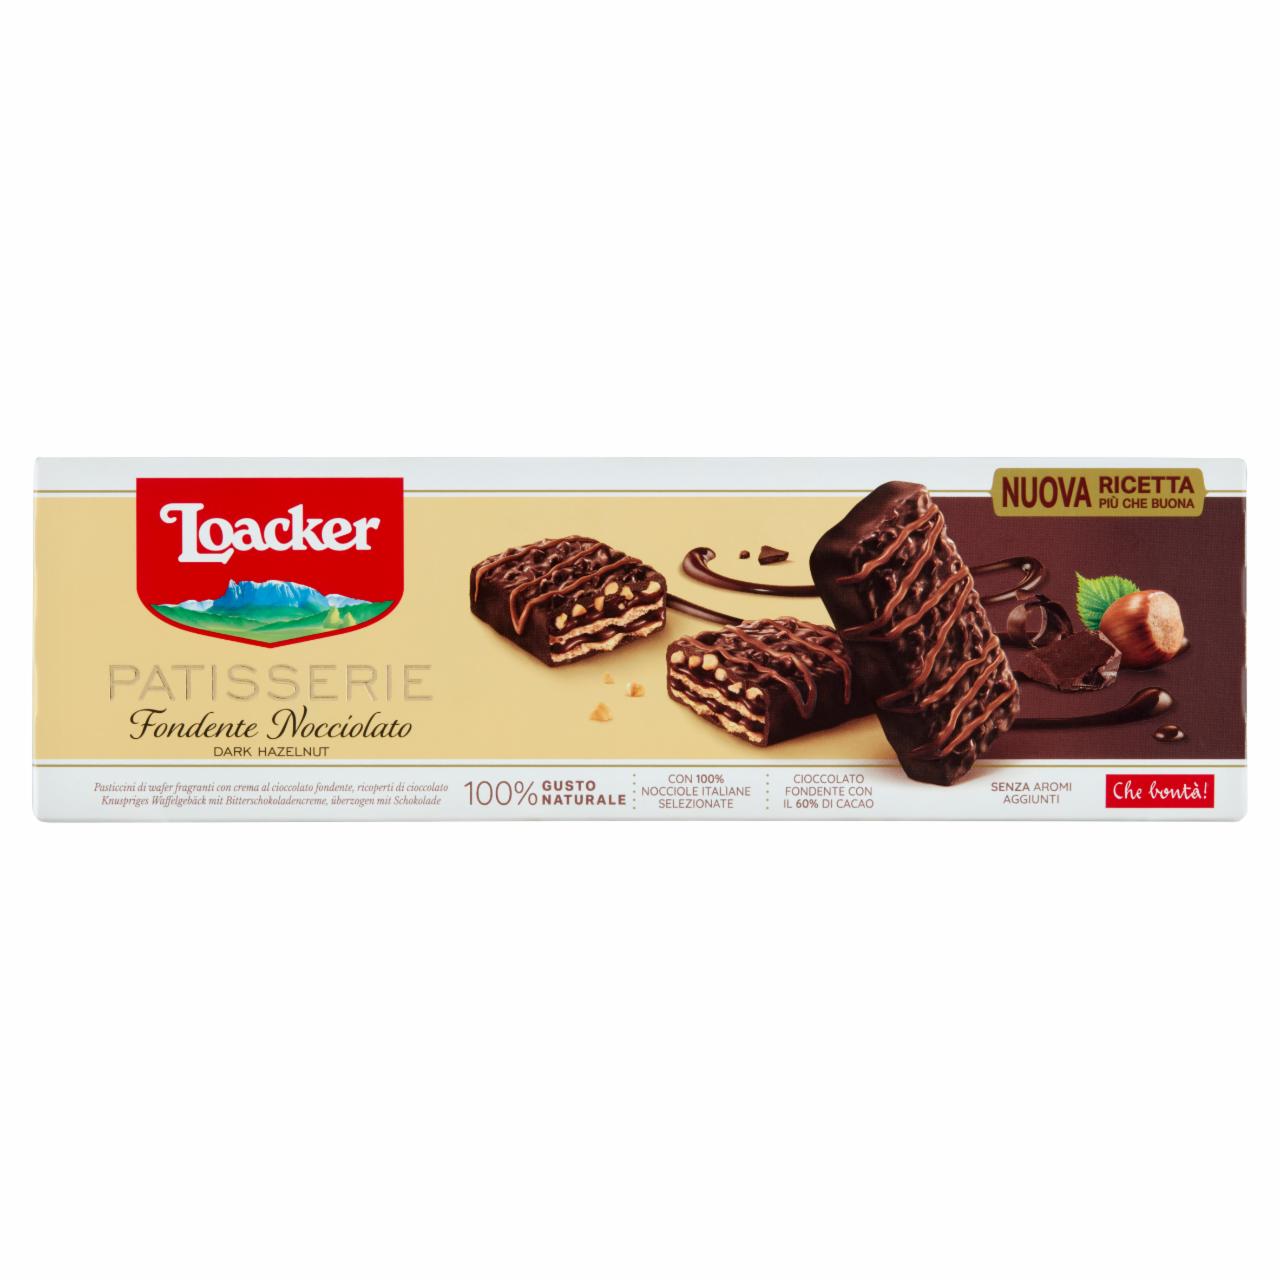 Képek - Loacker Patisserie Dark Hazelnut csokoládékrémmel töltött ostyakülönlegesség 100 g